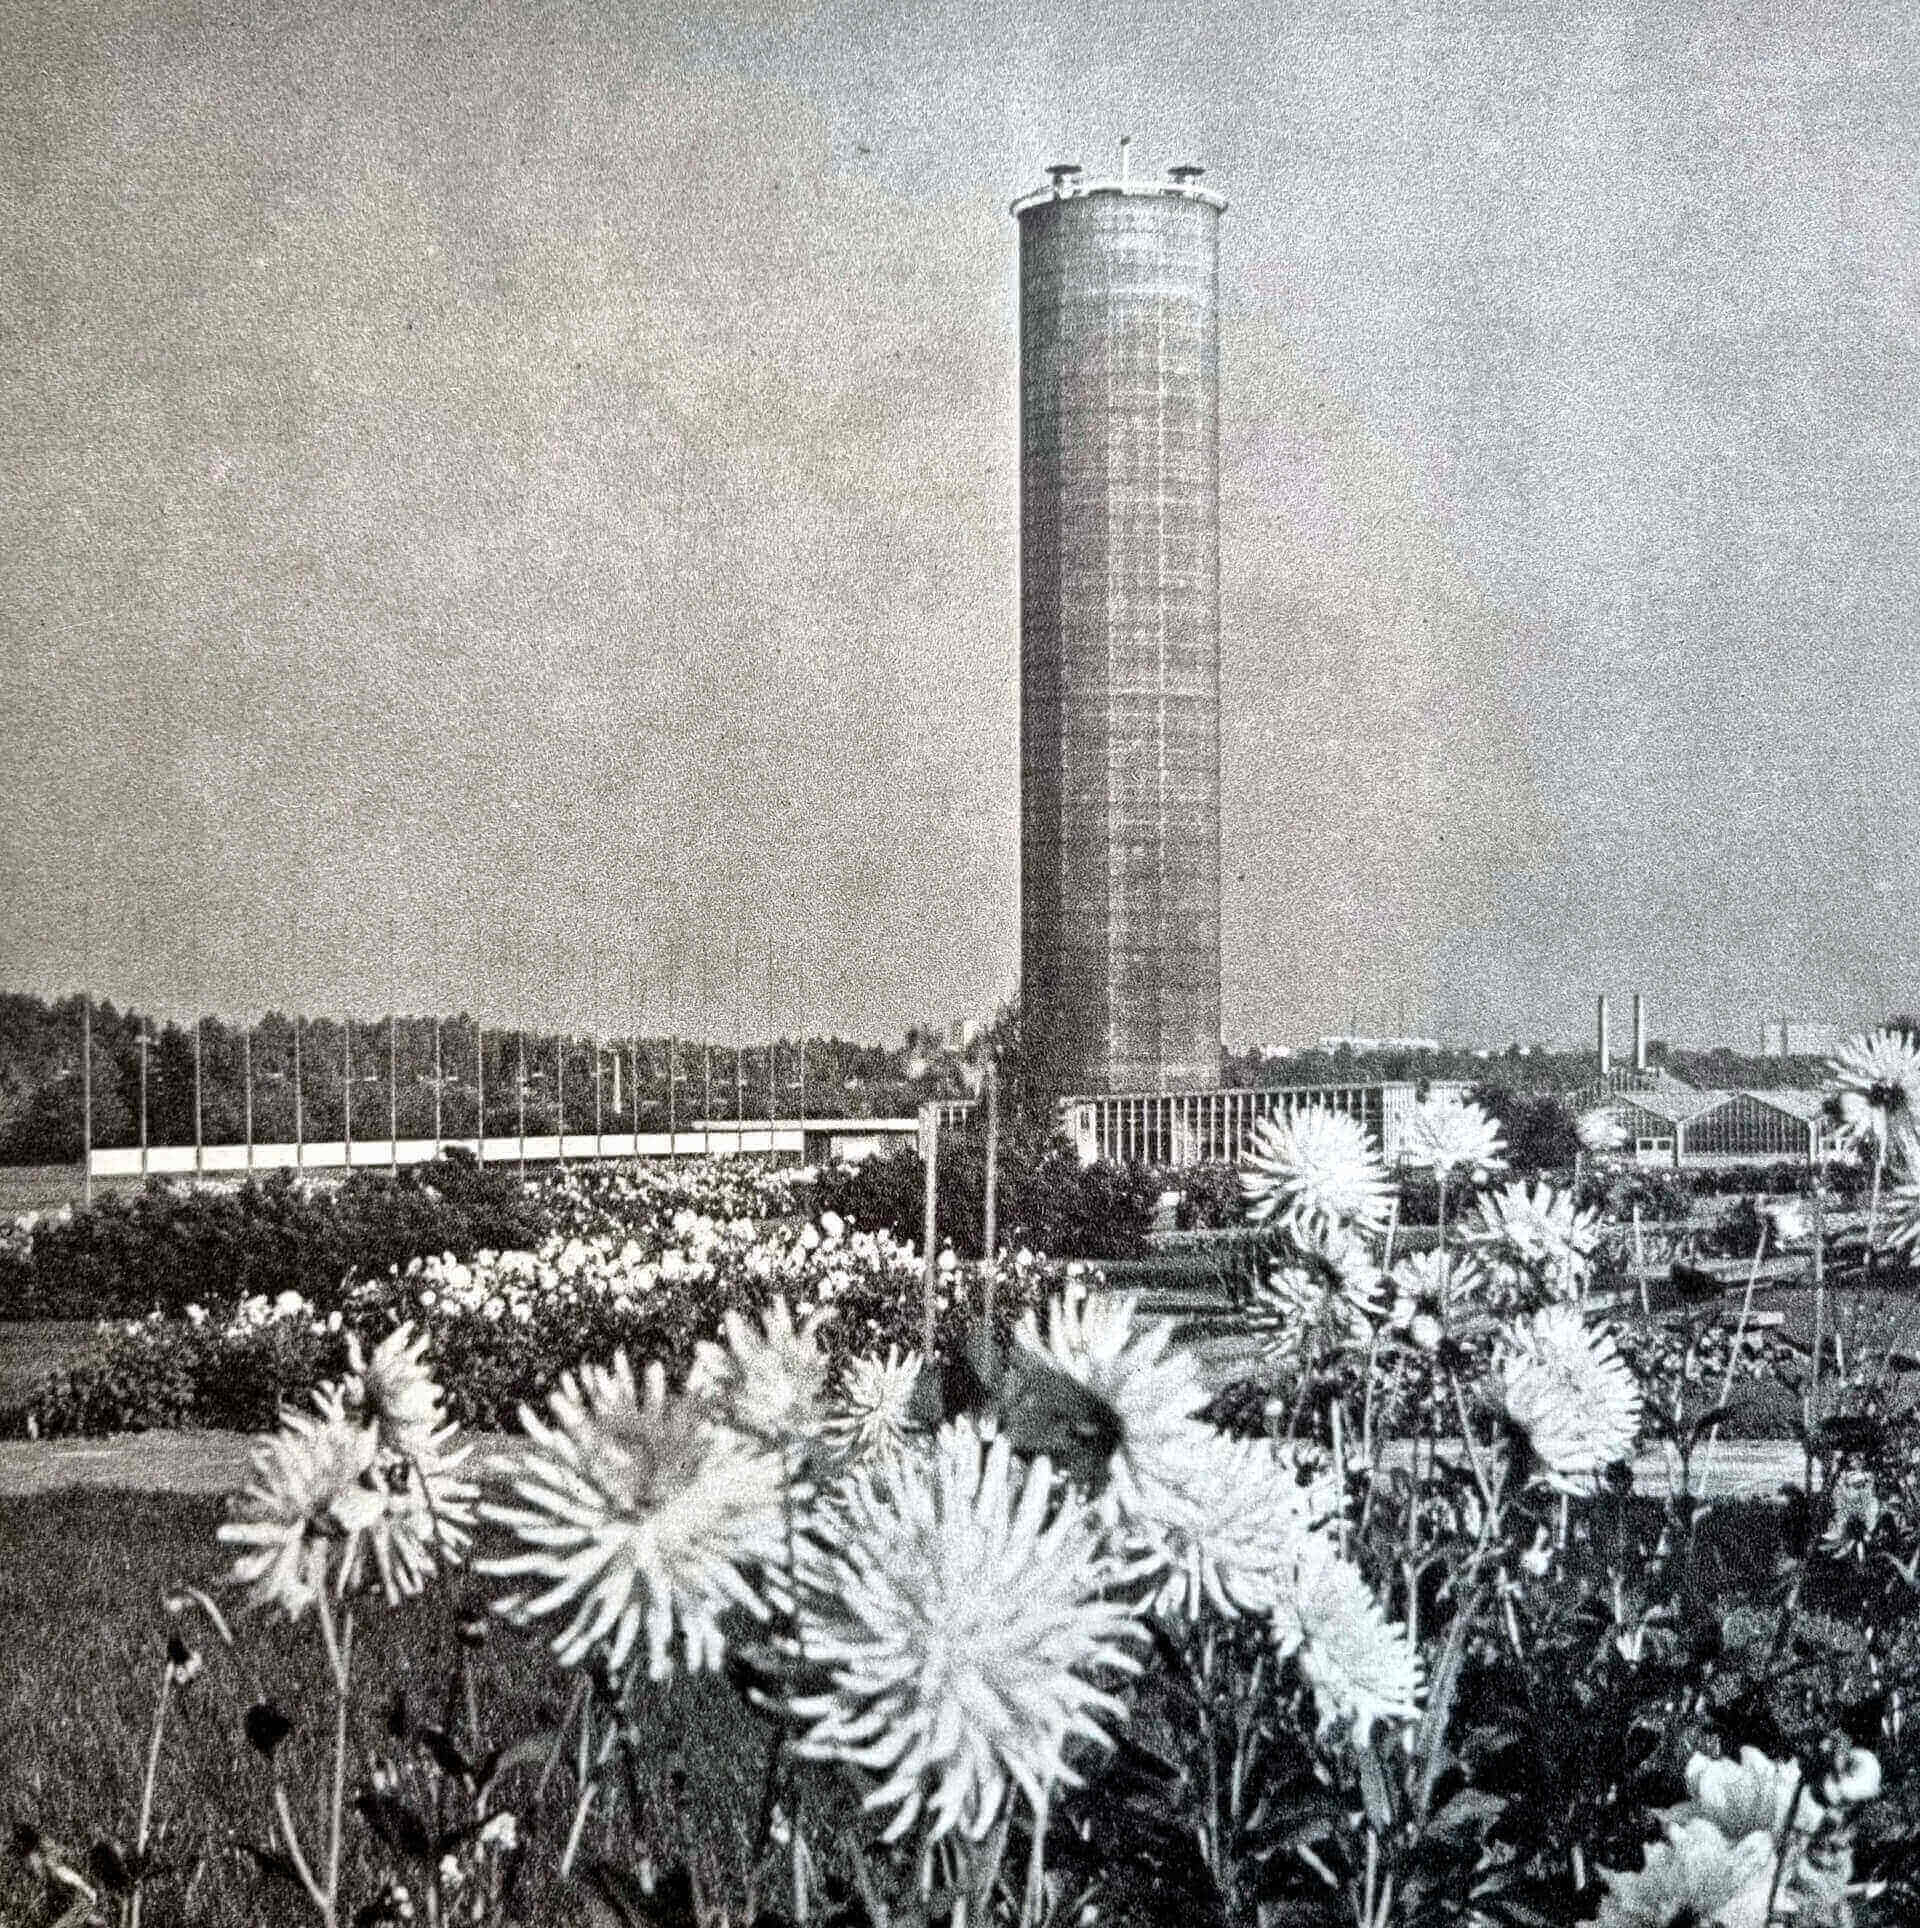 Szklarnia wieżowa należała do najbardziej charakterystycznych obiektów w krajobrazie WPKiW